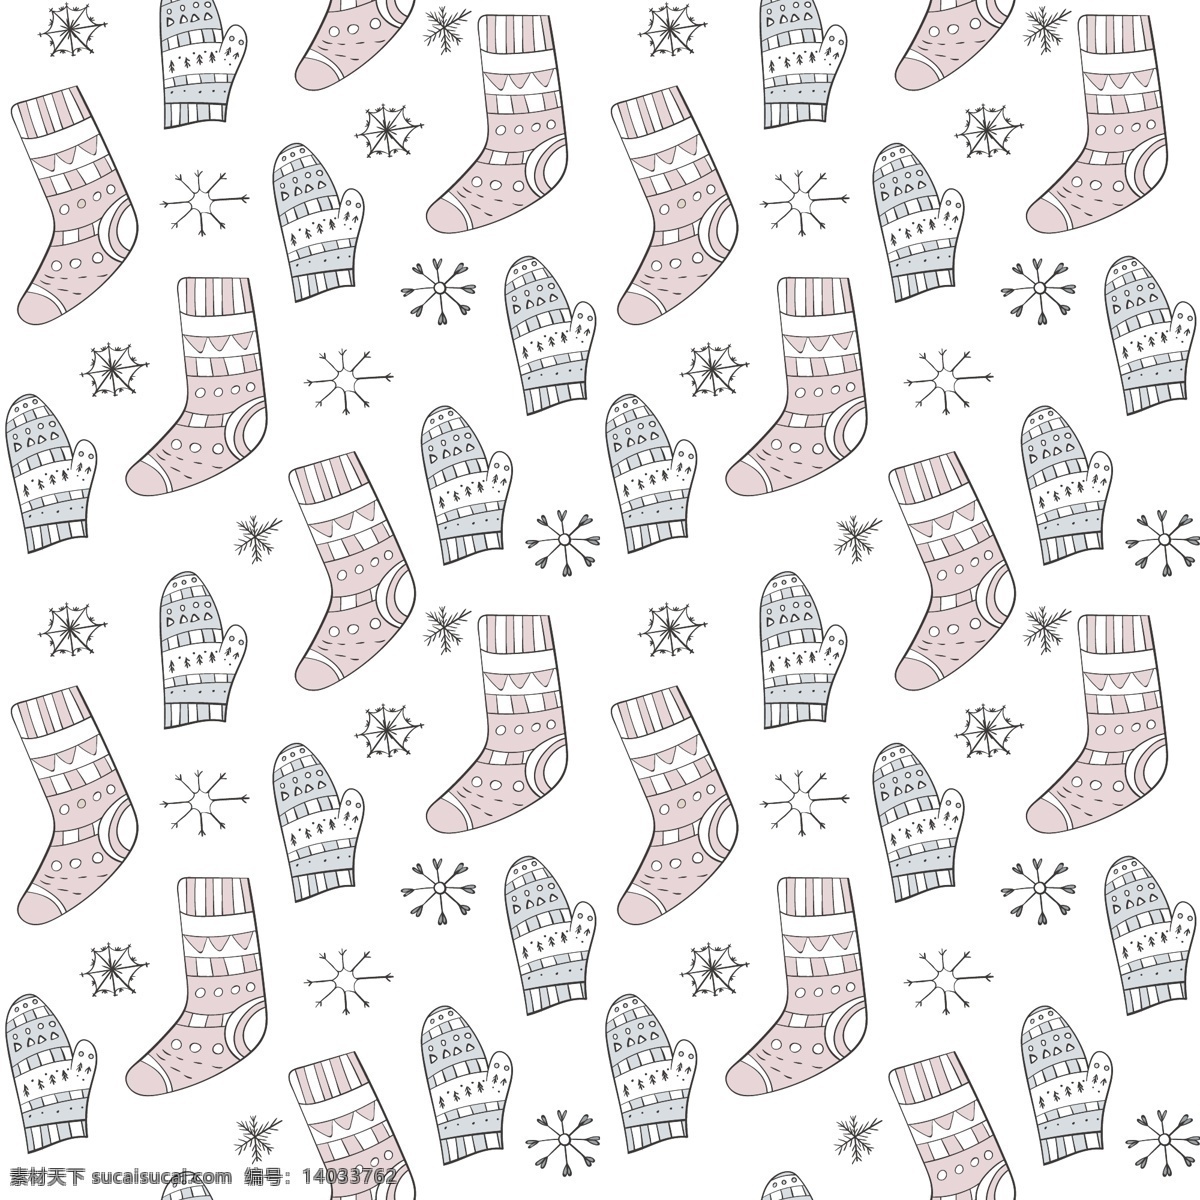 红蓝 袜子 冬天 卡通 矢量 冬季 冬日 节日 平面素材 设计素材 矢量素材 温暖 温馨 织物